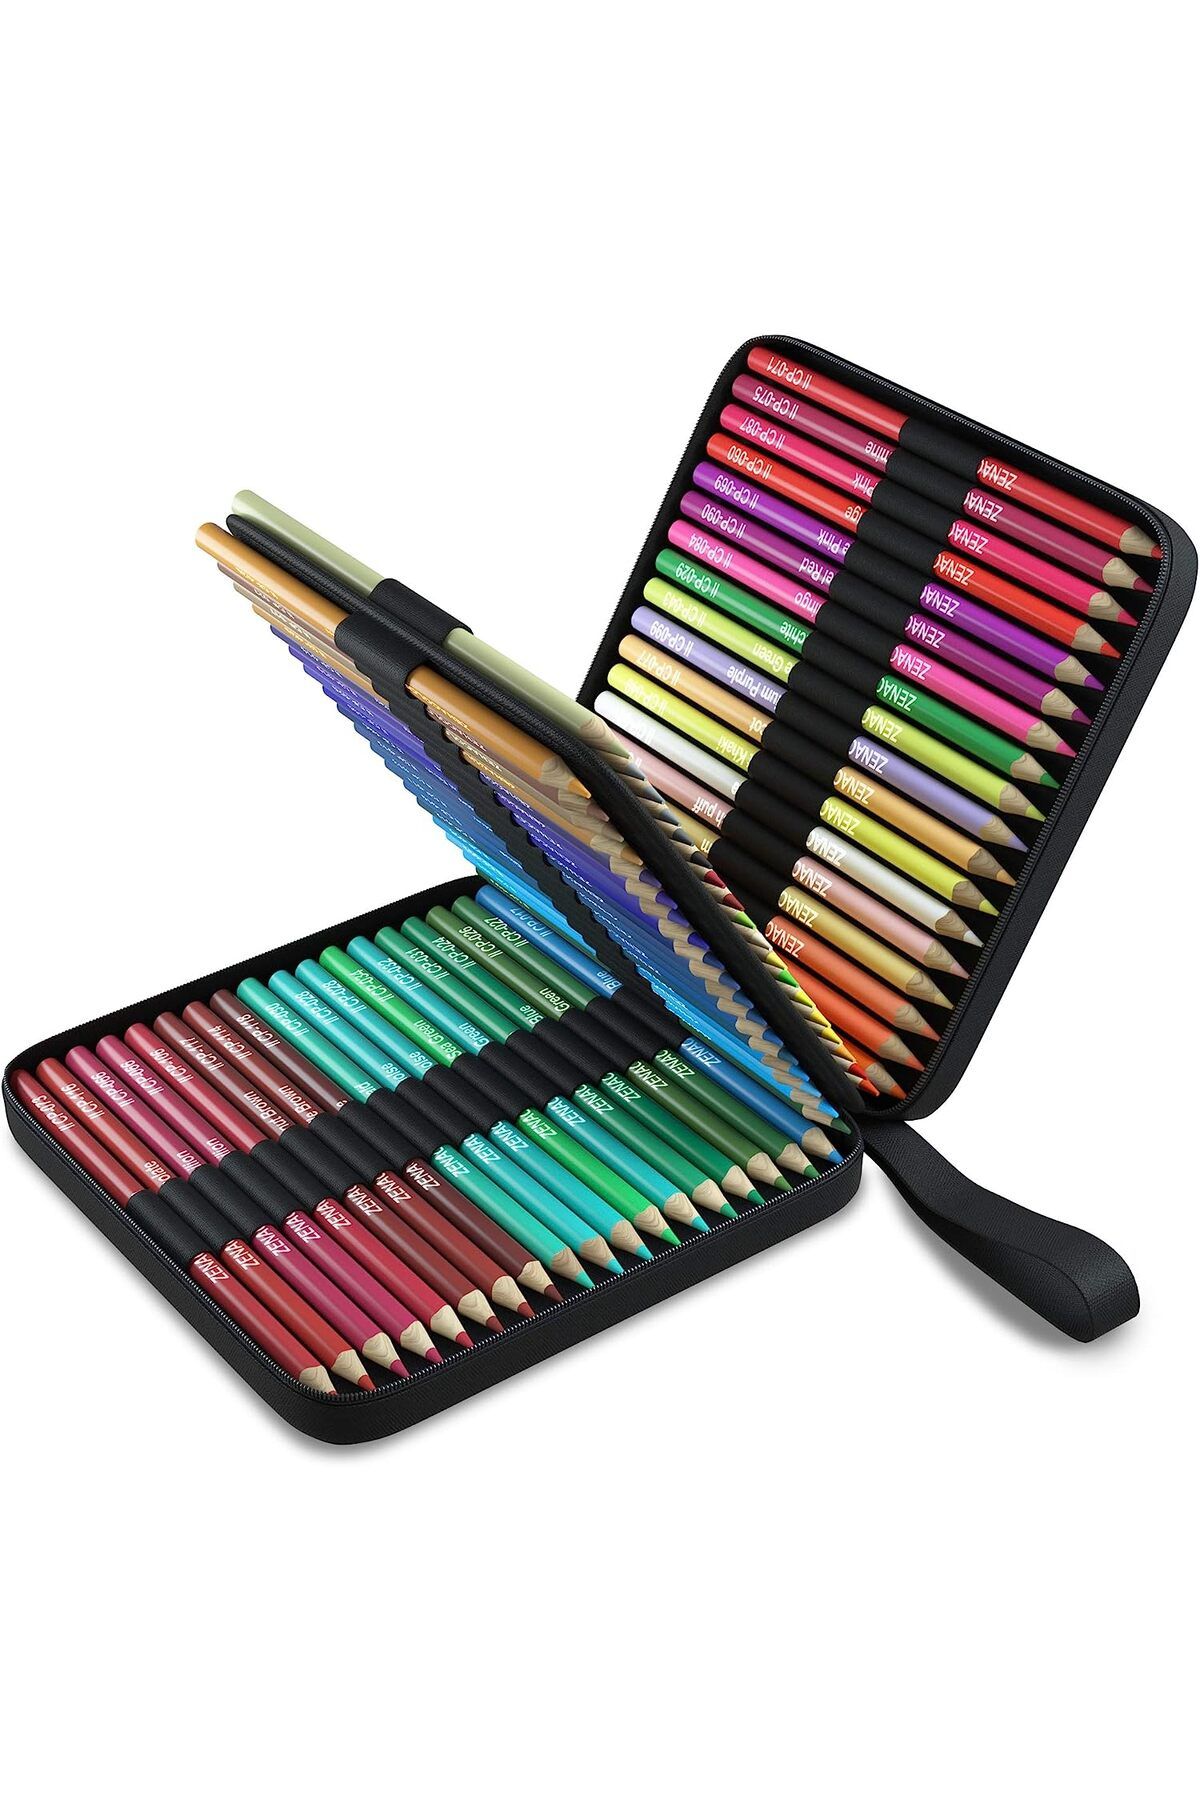 Art Tone Profesyonel Çantalı Kuru Boya Kalem Seti 72'li Tüm Renkler - Eskiz Kalem ve Çizim Kalemleri Seti